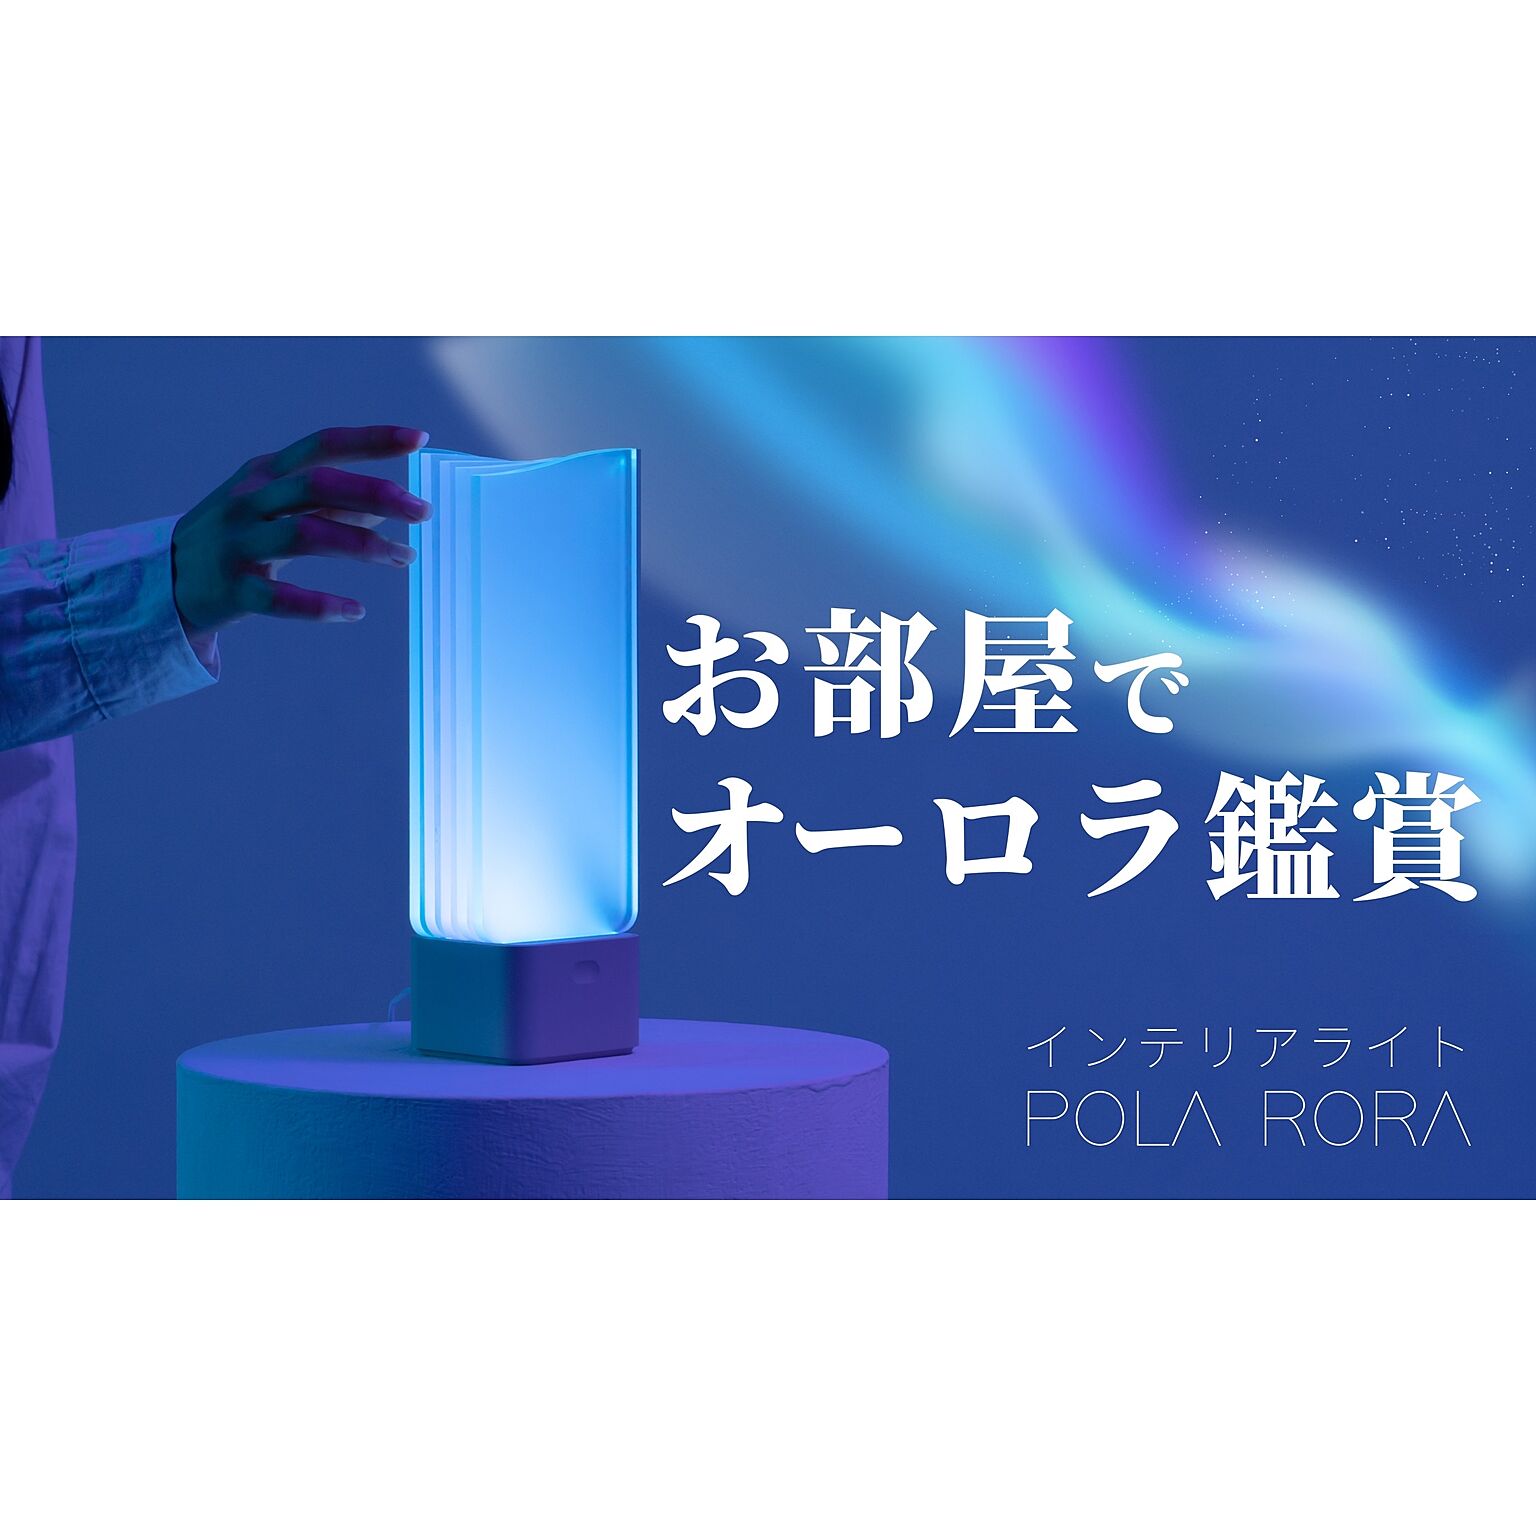 【POLA RORA】オーロラライト ポーラローラ LED インテリアライト 間接照明 オーロラの光で癒しのおうち時間を